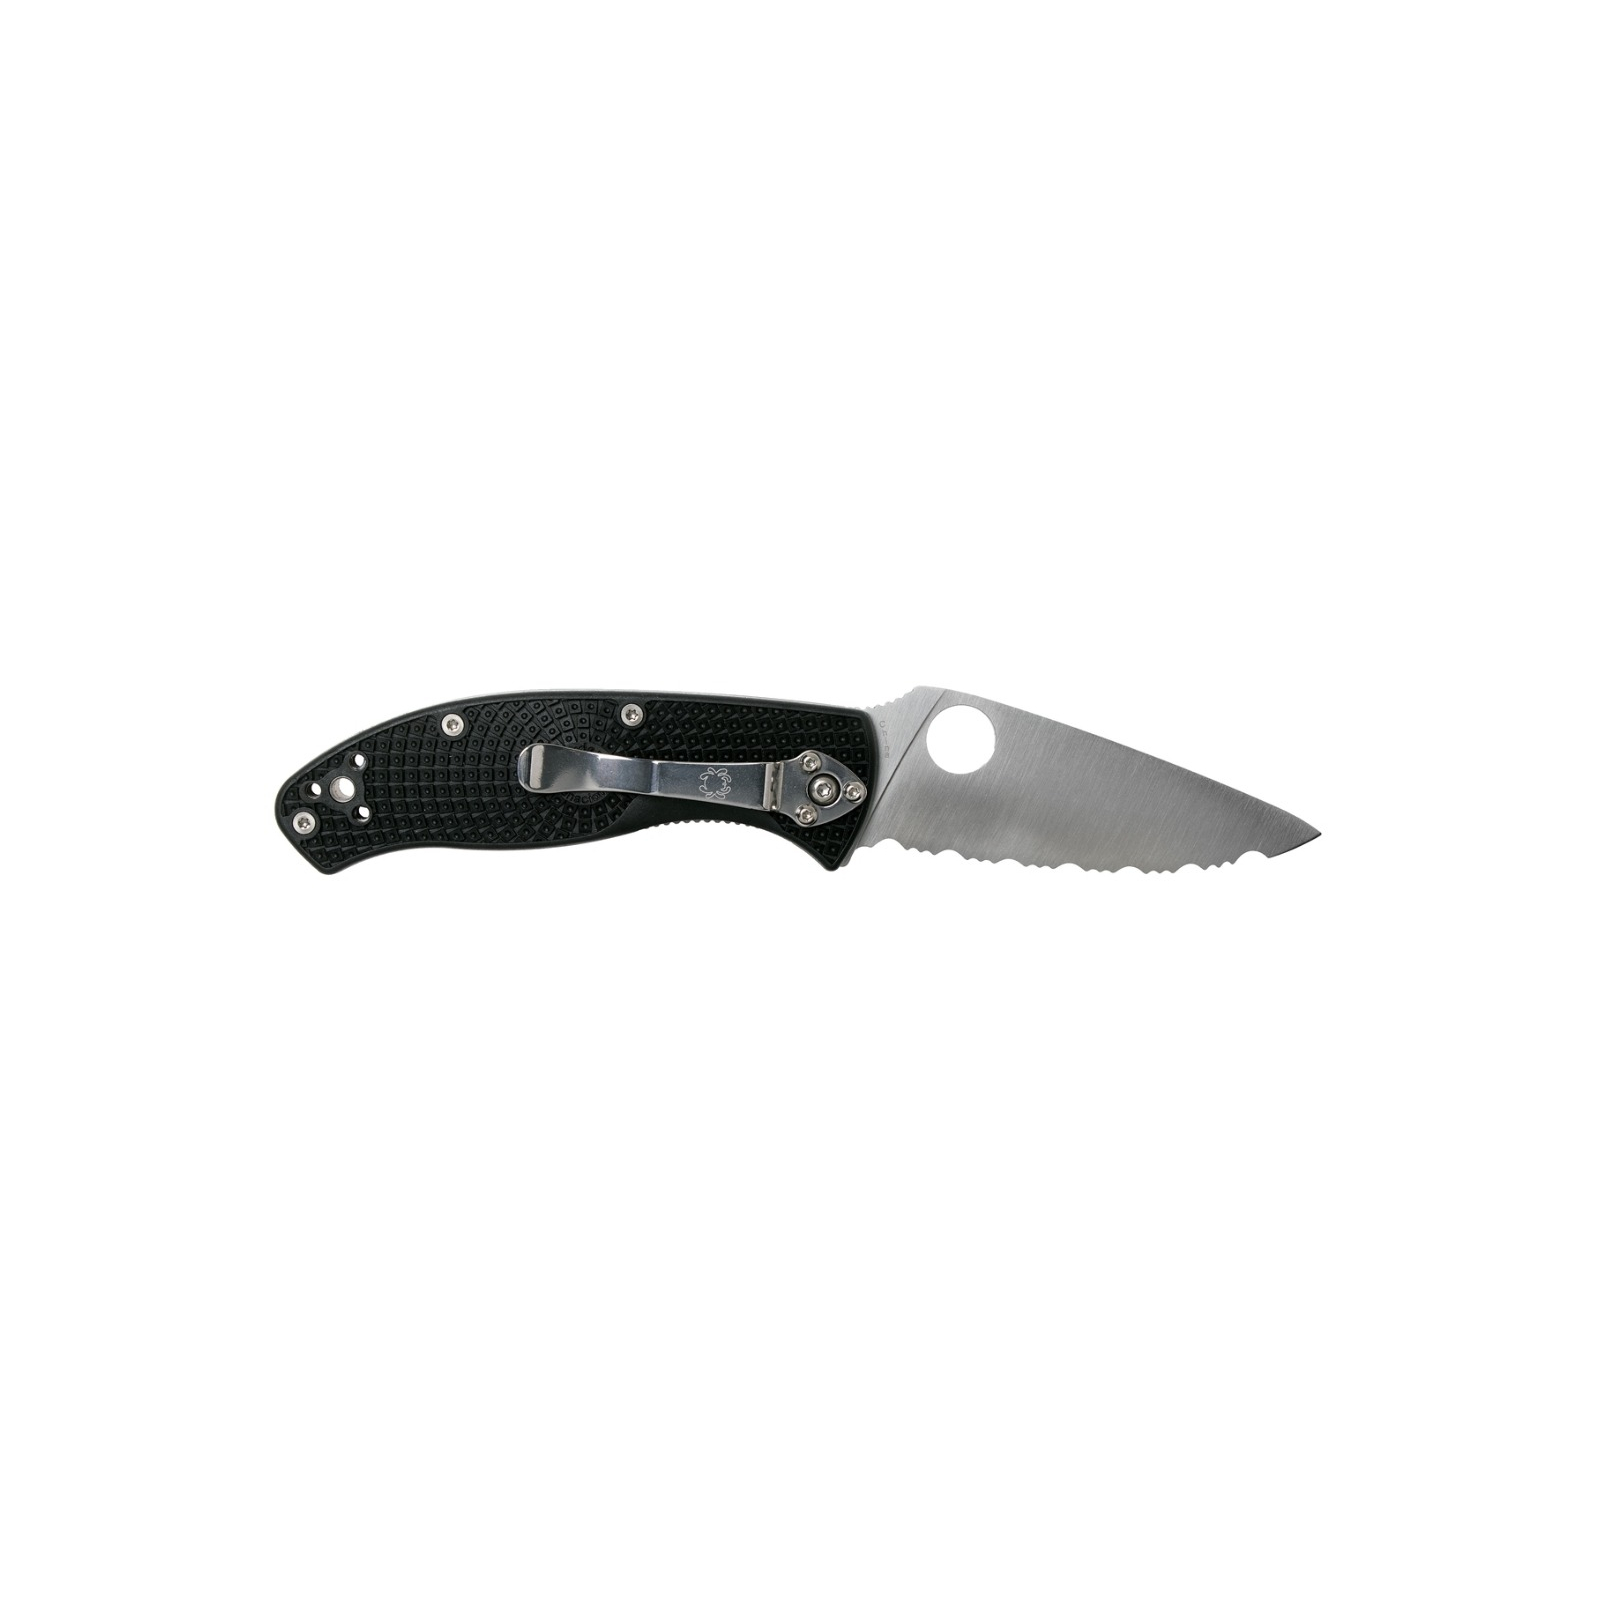 Нож Spyderco Tenacious Black Blade FRN серрейтор (C122SBBK) изображение 2